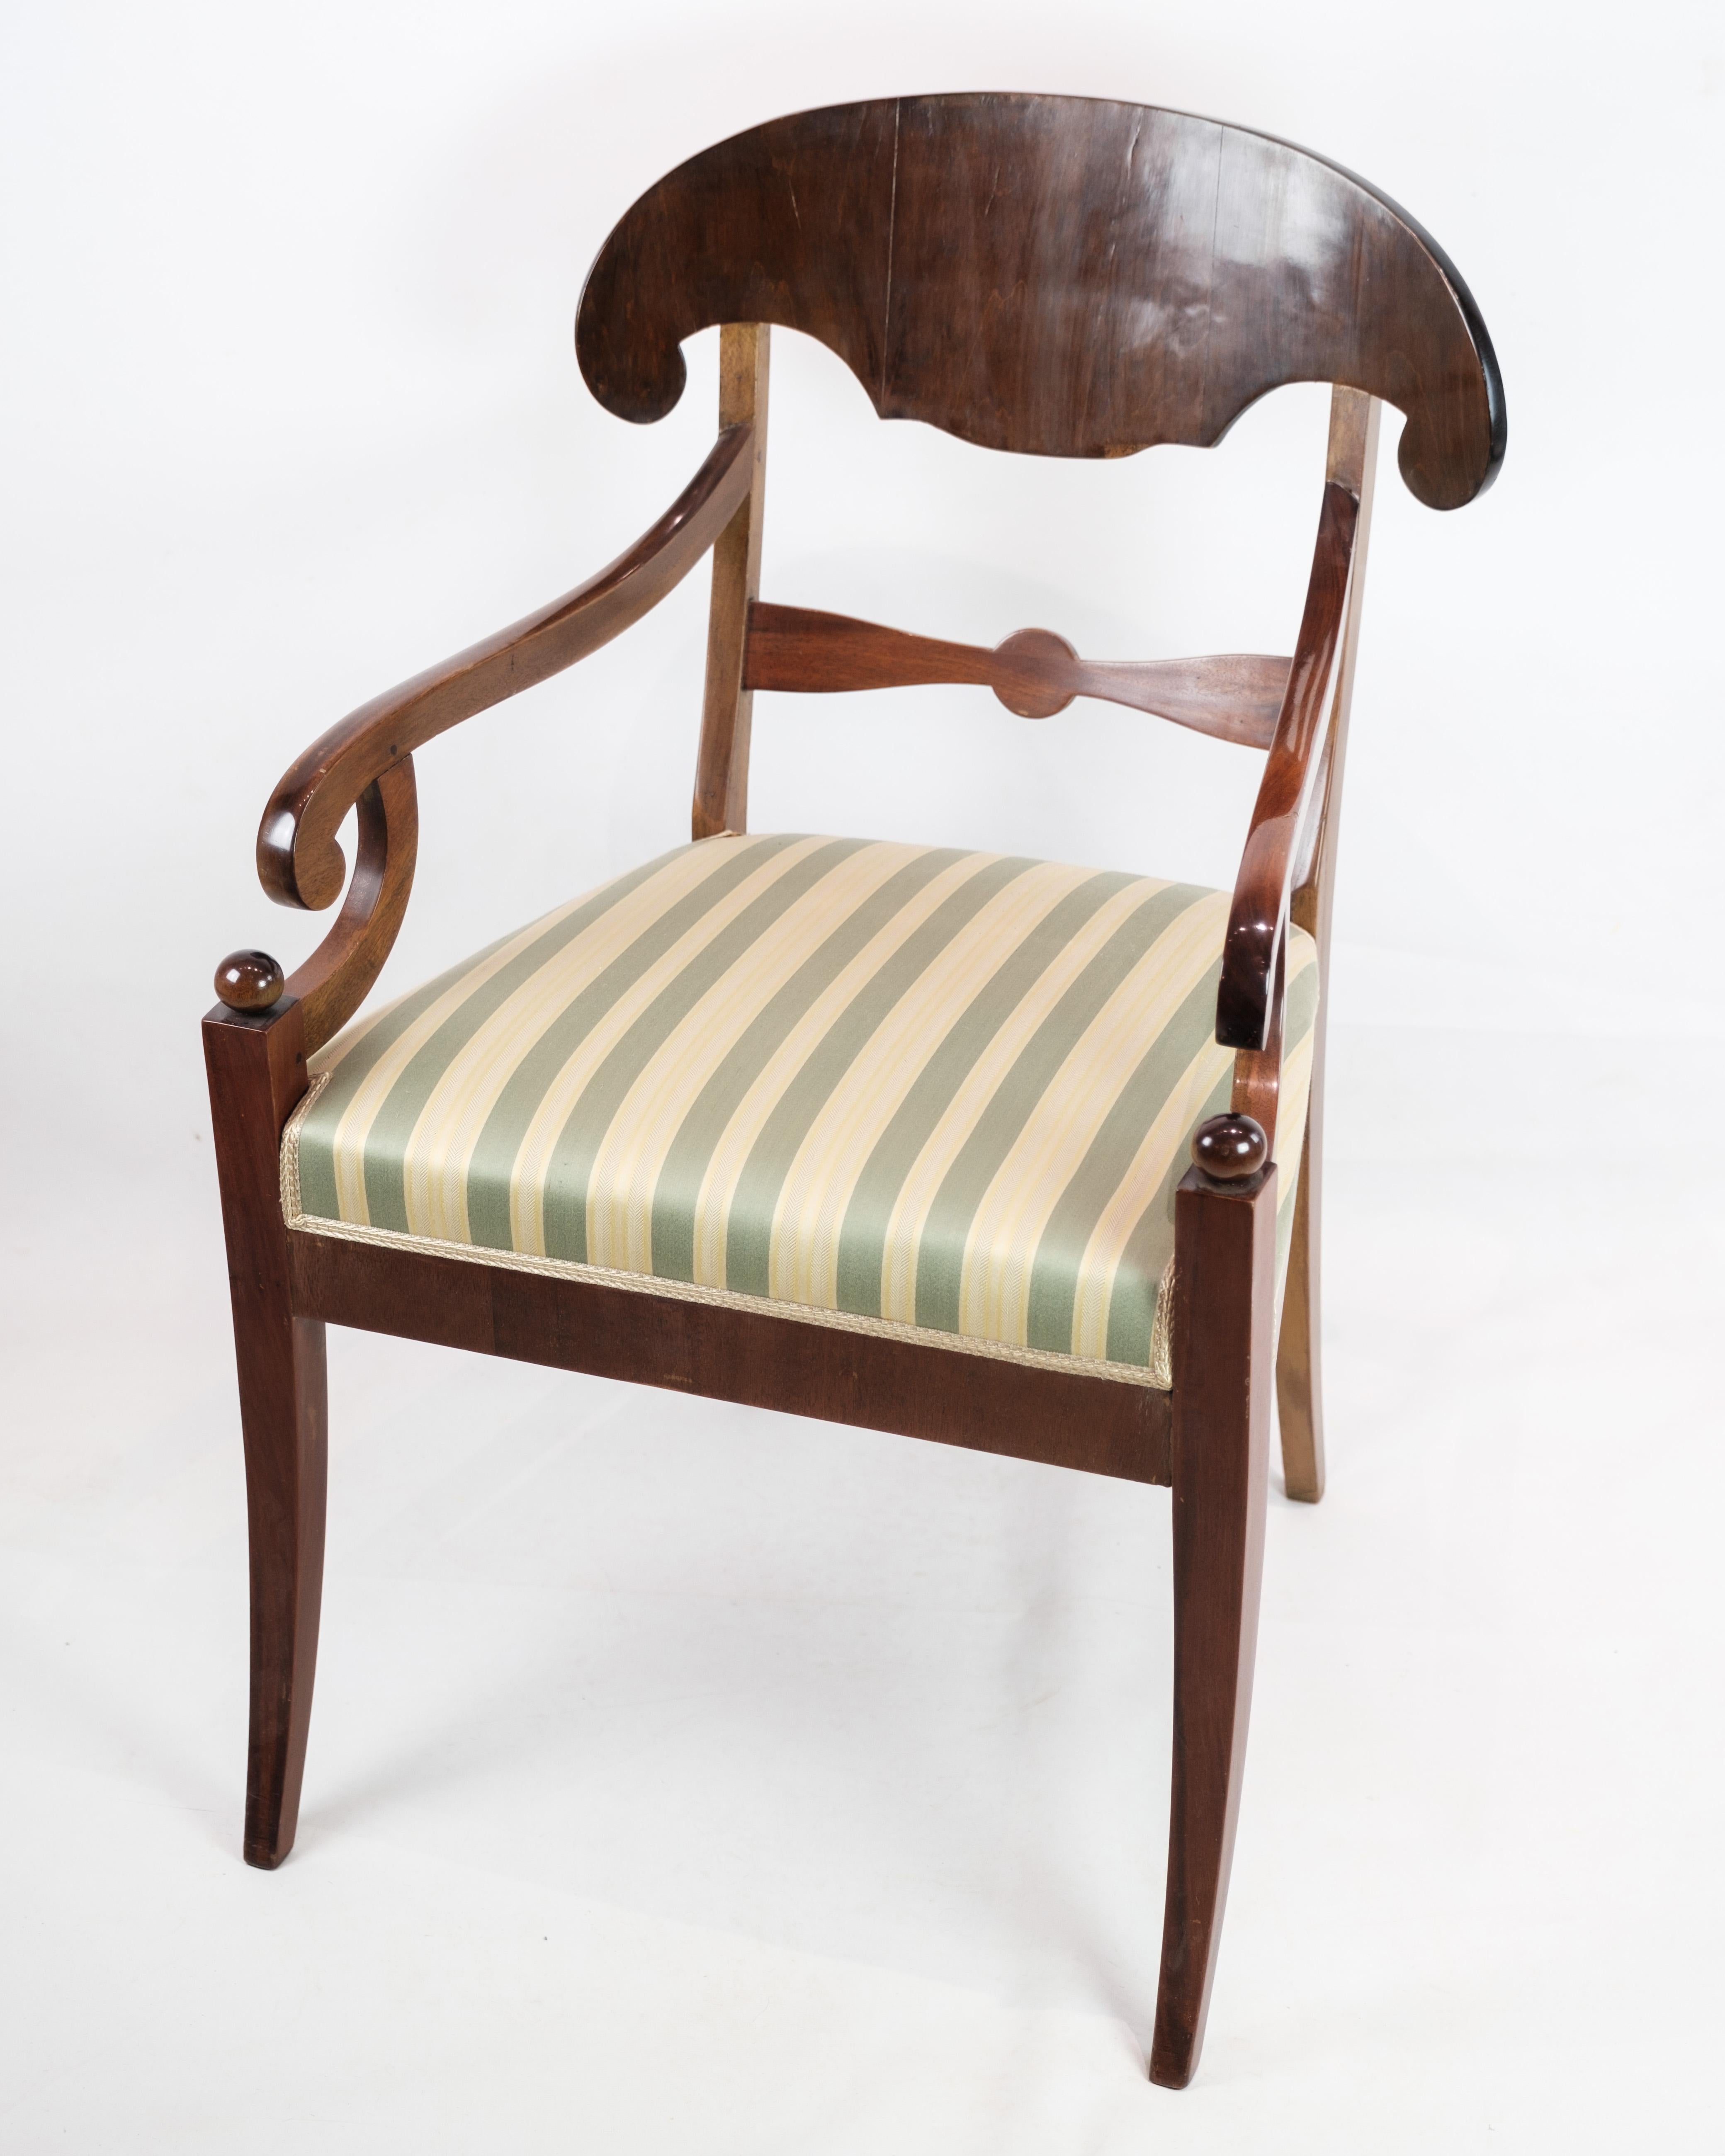 Ce fauteuil de la fin de l'empire, datant d'environ 1840, dégage une élégance intemporelle avec sa structure en acajou et son revêtement en tissu rayé clair. Fabriqué à l'apogée de la période de l'empire, il témoigne d'un savoir-faire exquis et